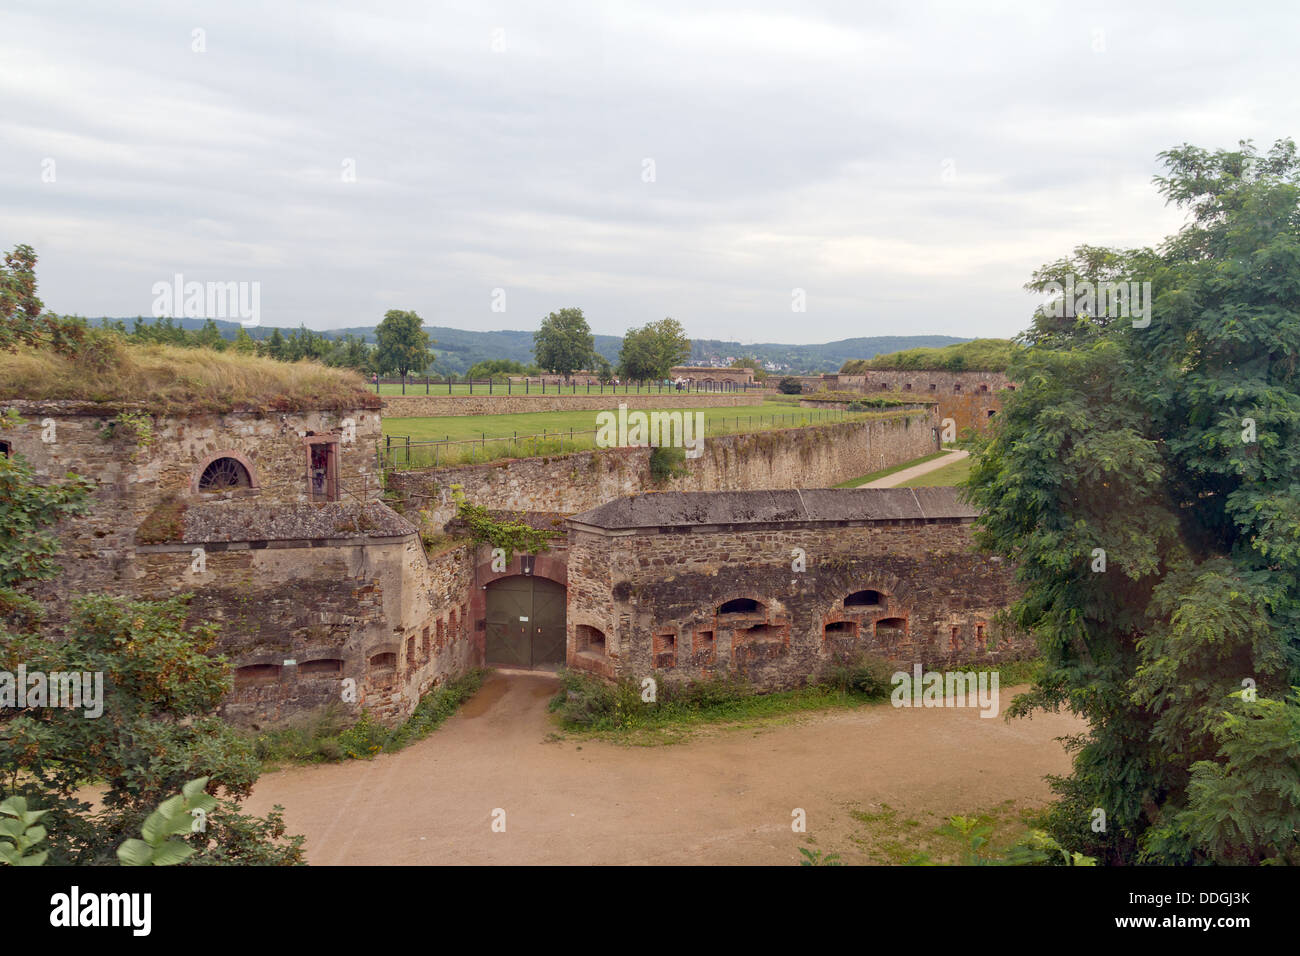 Fortress Ehrenbreitstein in Koblenz, Germany Stock Photo